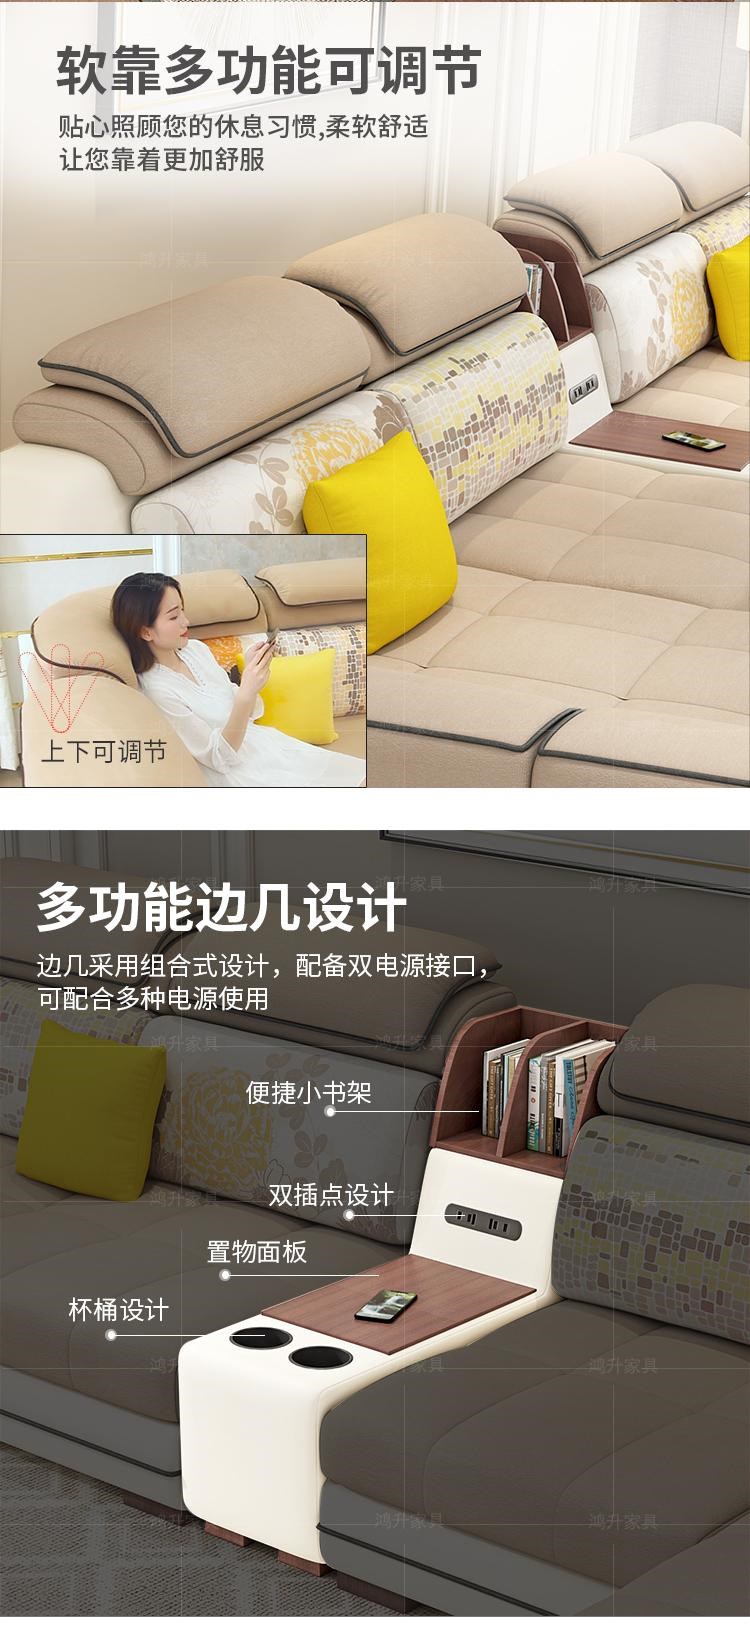 Sofa vải kết hợp bộ kích thước phòng khách chung cư hoàn thiện sofa da tối giản hiện đại 2018 nội thất mới - Ghế sô pha